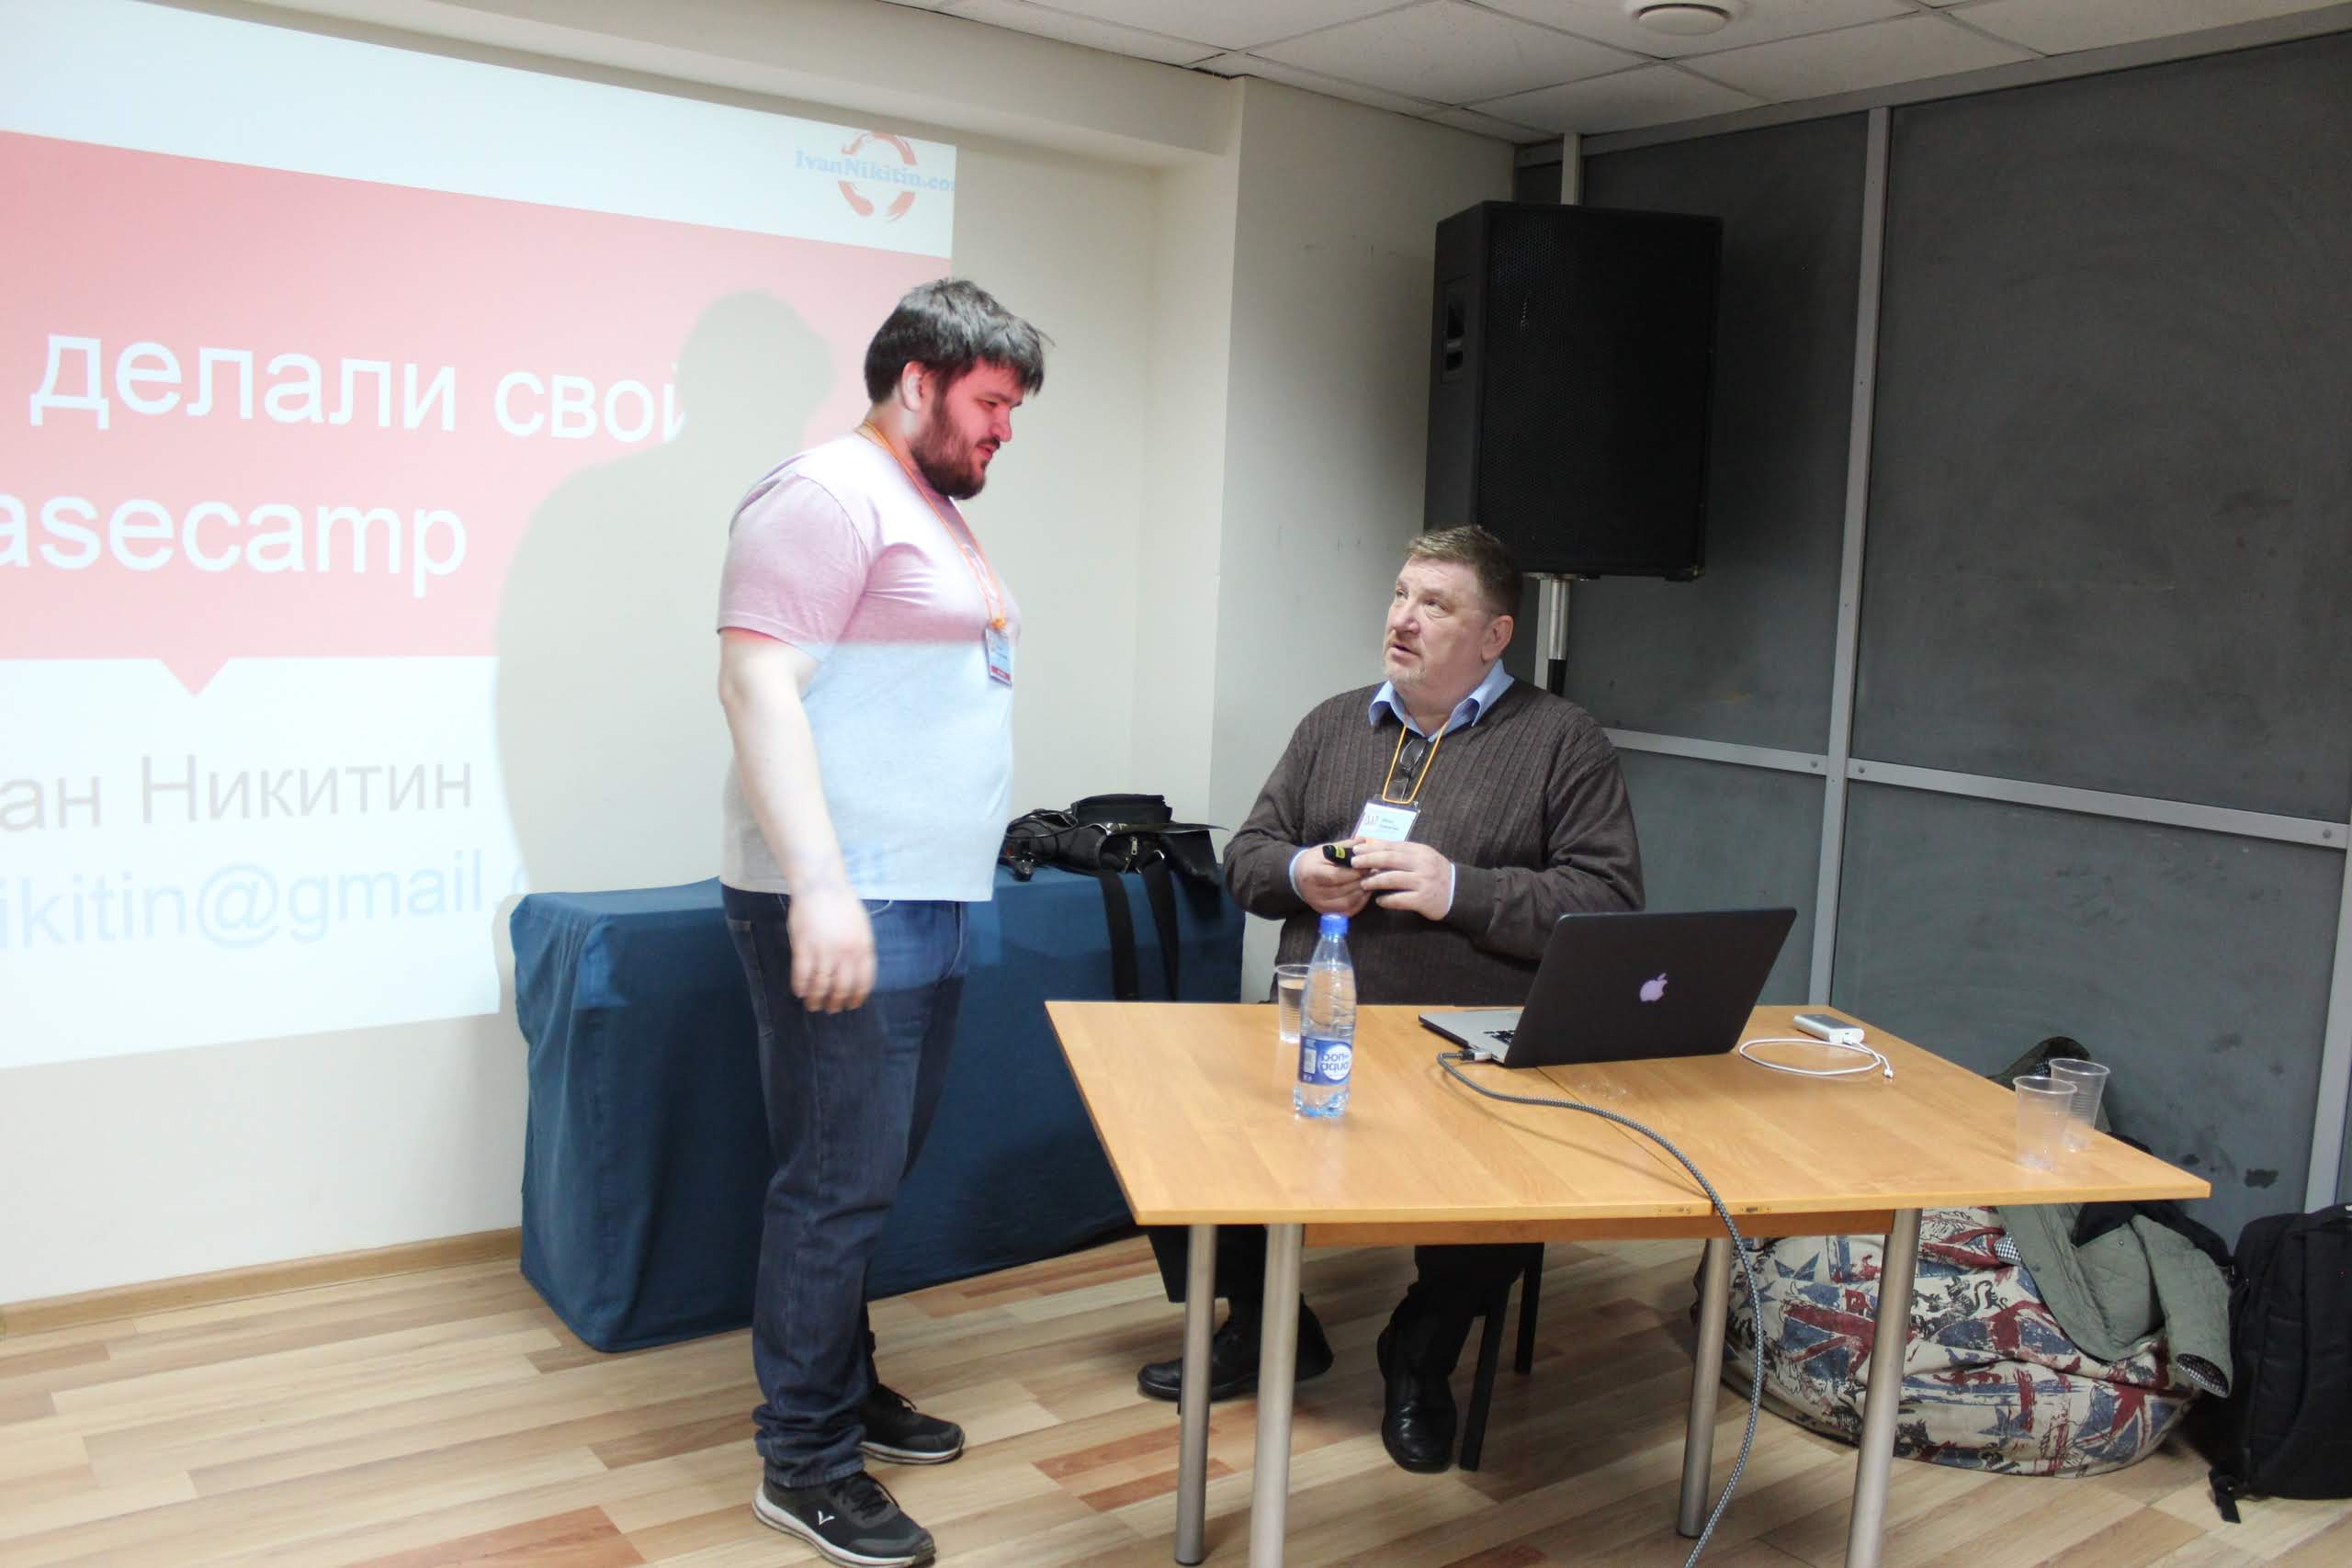 WordCamp Moscow 2016. Иван Геннадьевич отвечает на вопросы